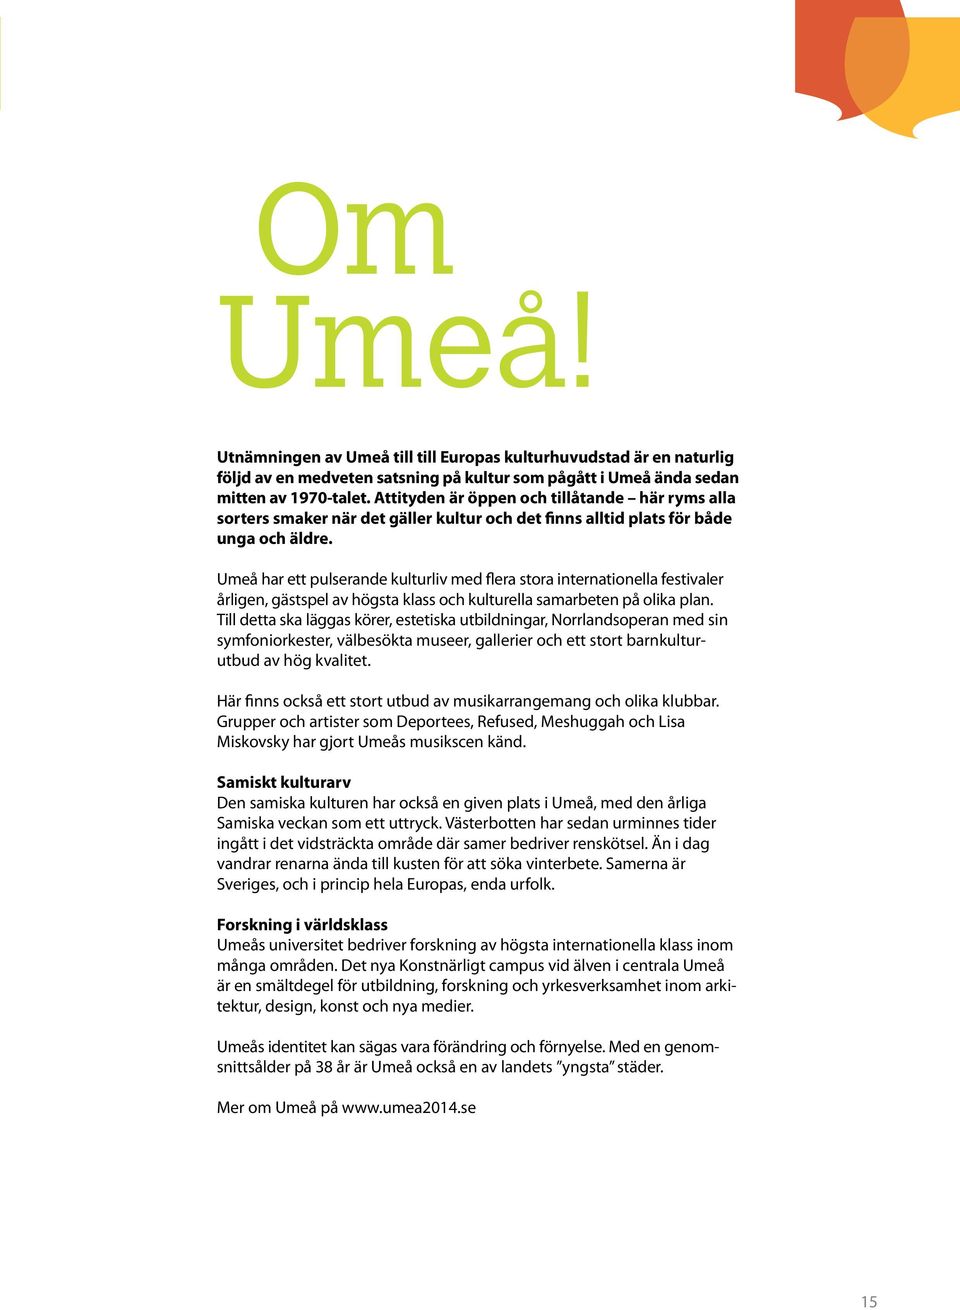 Umeå har ett pulserande kulturliv med flera stora internationella festivaler årligen, gästspel av högsta klass och kulturella samarbeten på olika plan.